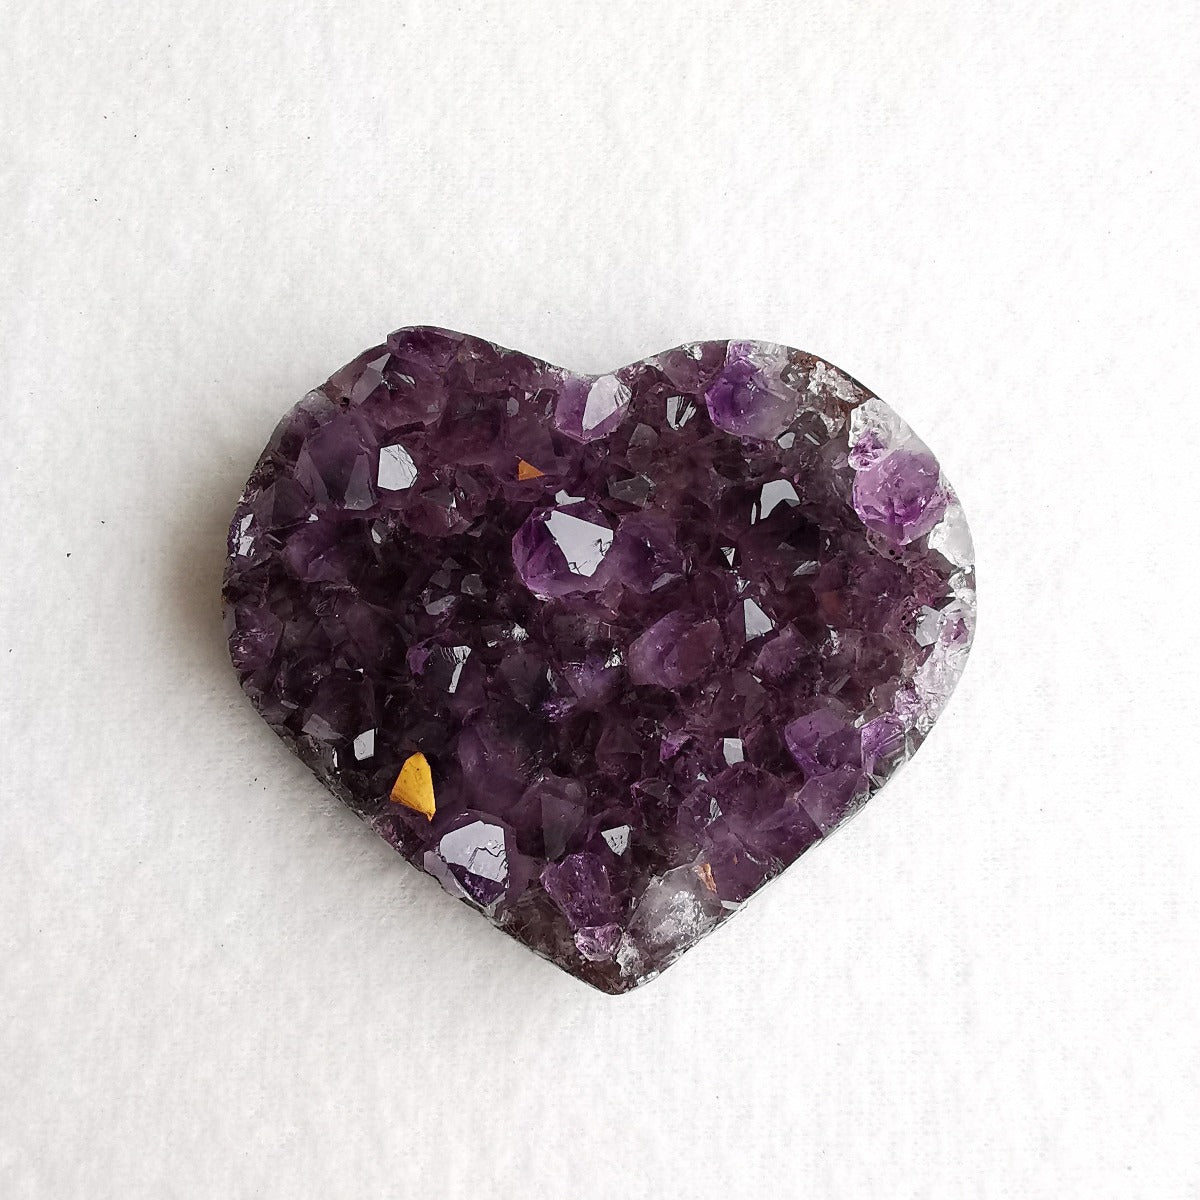 Amethyst krystallhjerte nr. 6 - Amethyst Crystal Heart